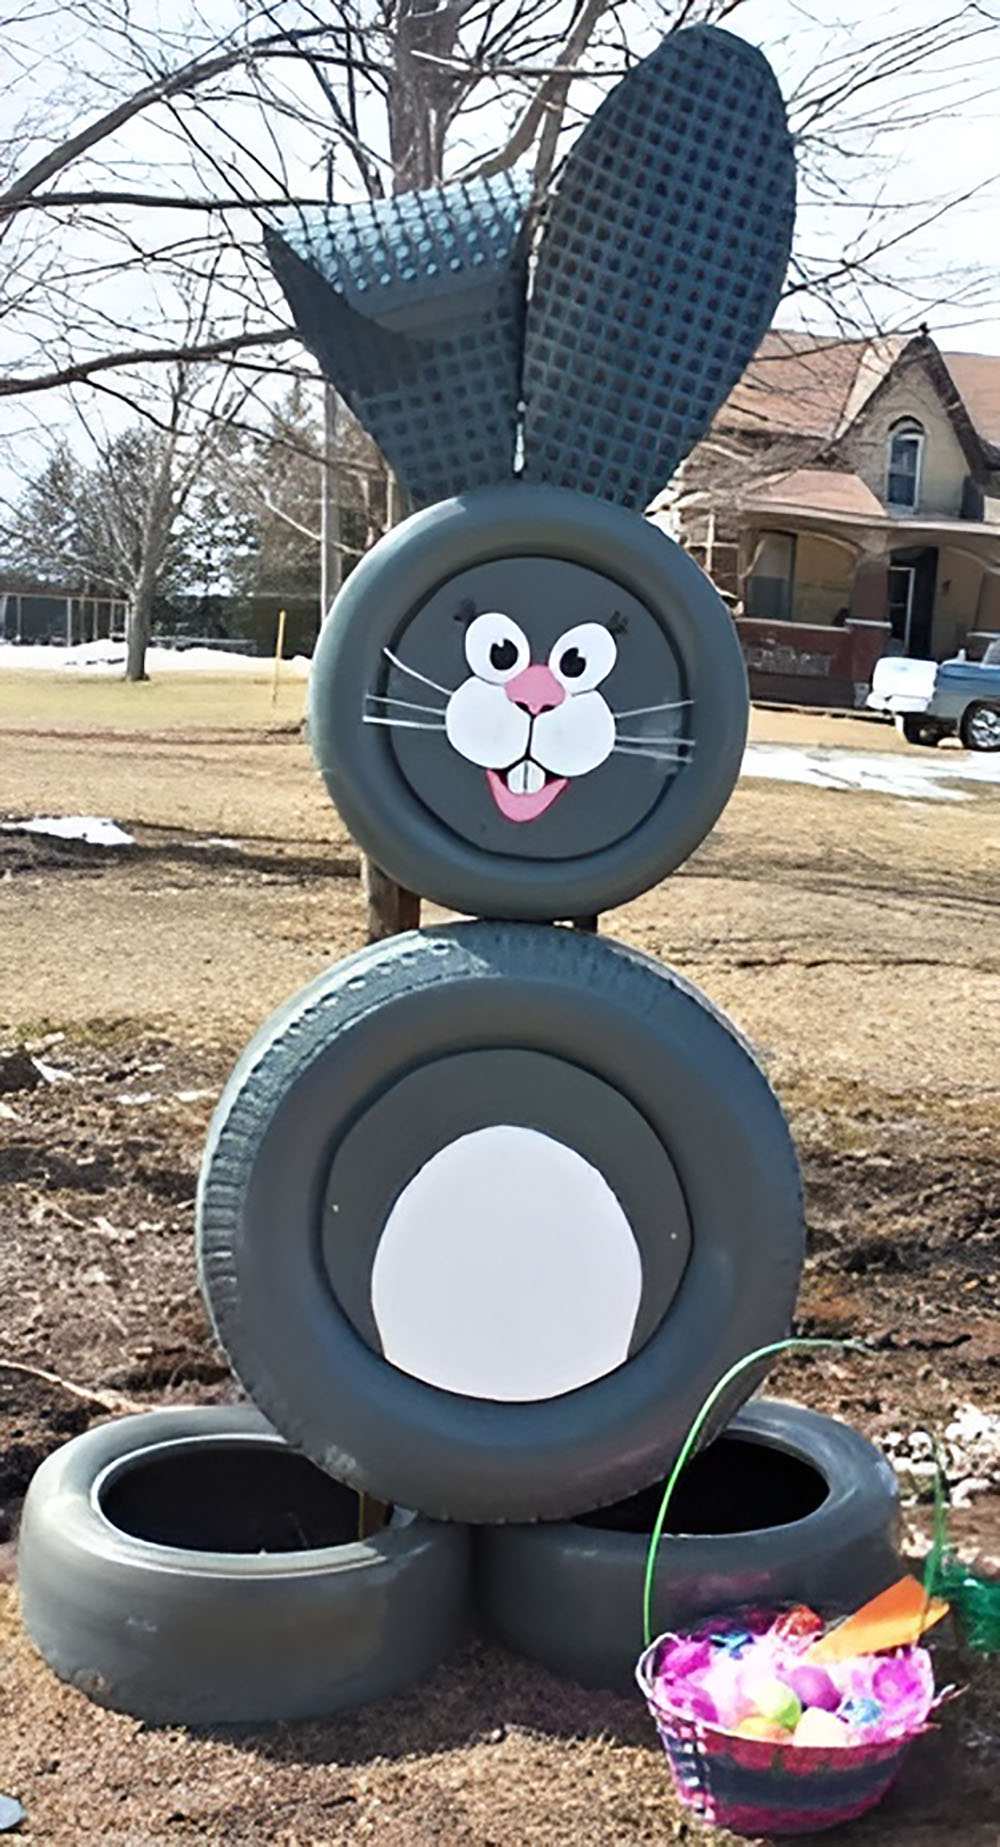 Thỏ Bunny trang trí khu vui chơi sáng tạo từ lốp xe cũ